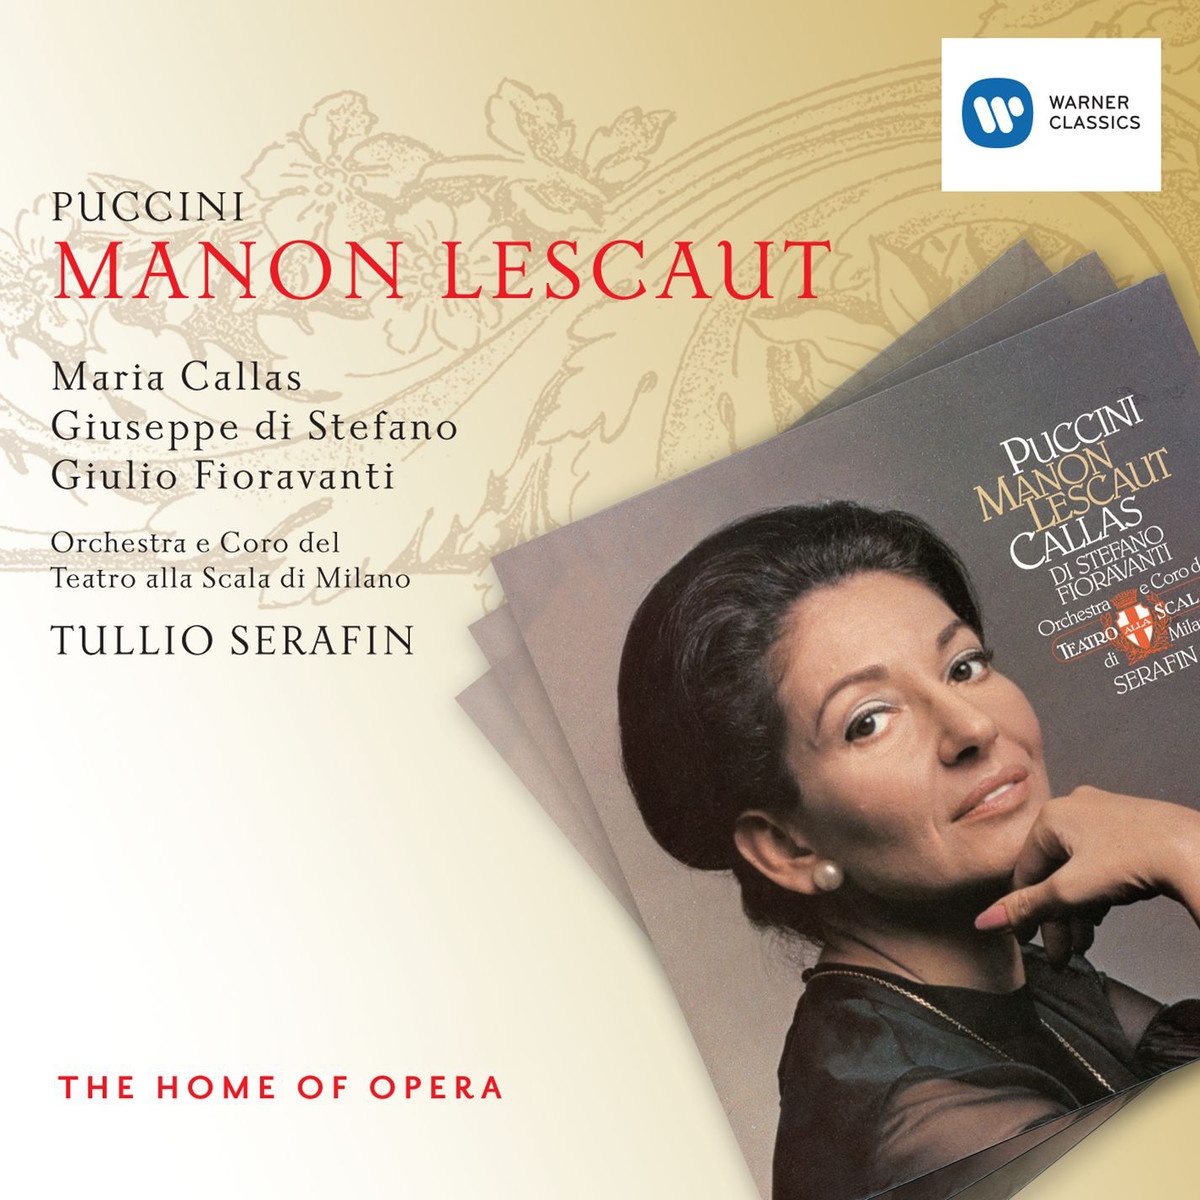 Manon Lescaut, ATTO TERZO ACT 3 DRITTER AKT TROISIÈ ME ACTE: Rosetta! Sergente Coro Lescaut Manon Des Grieux